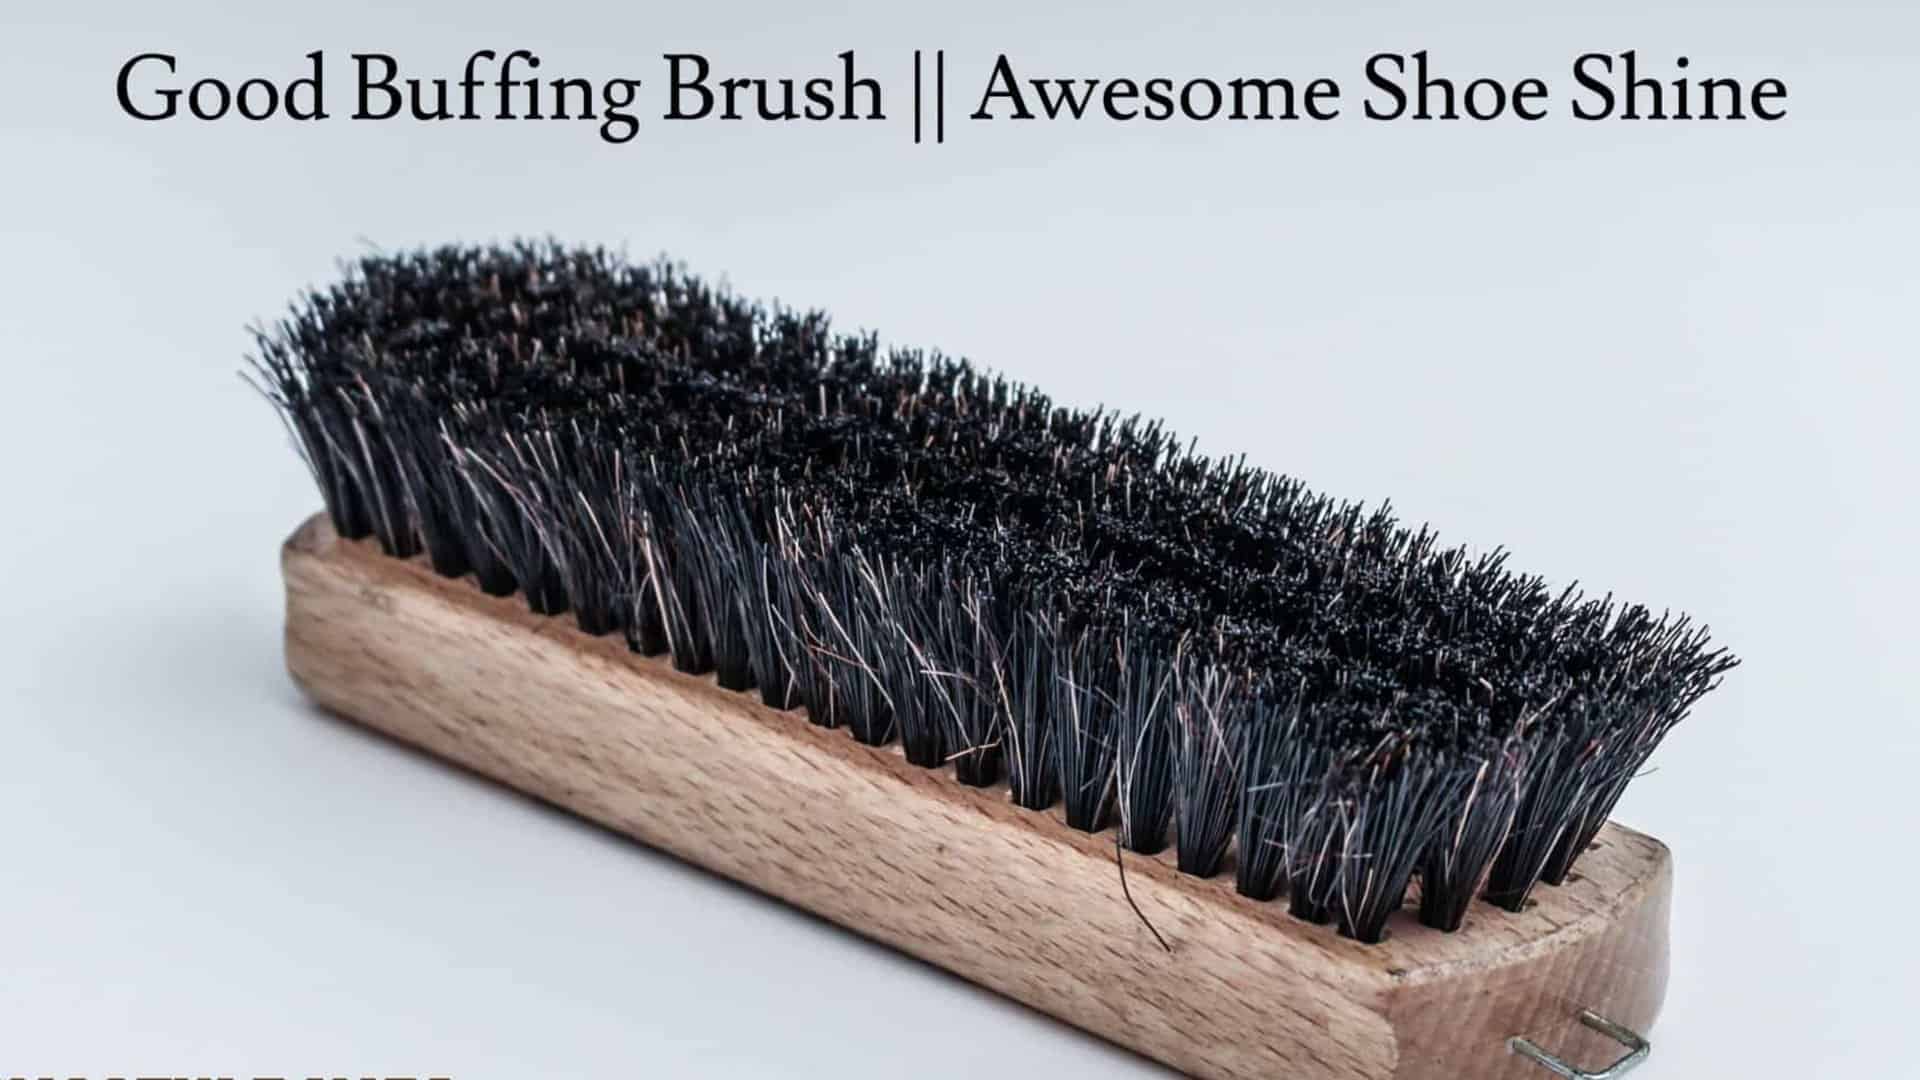 Good-Buffing-Brush-Ensures-Awesome-Shoe-Shine